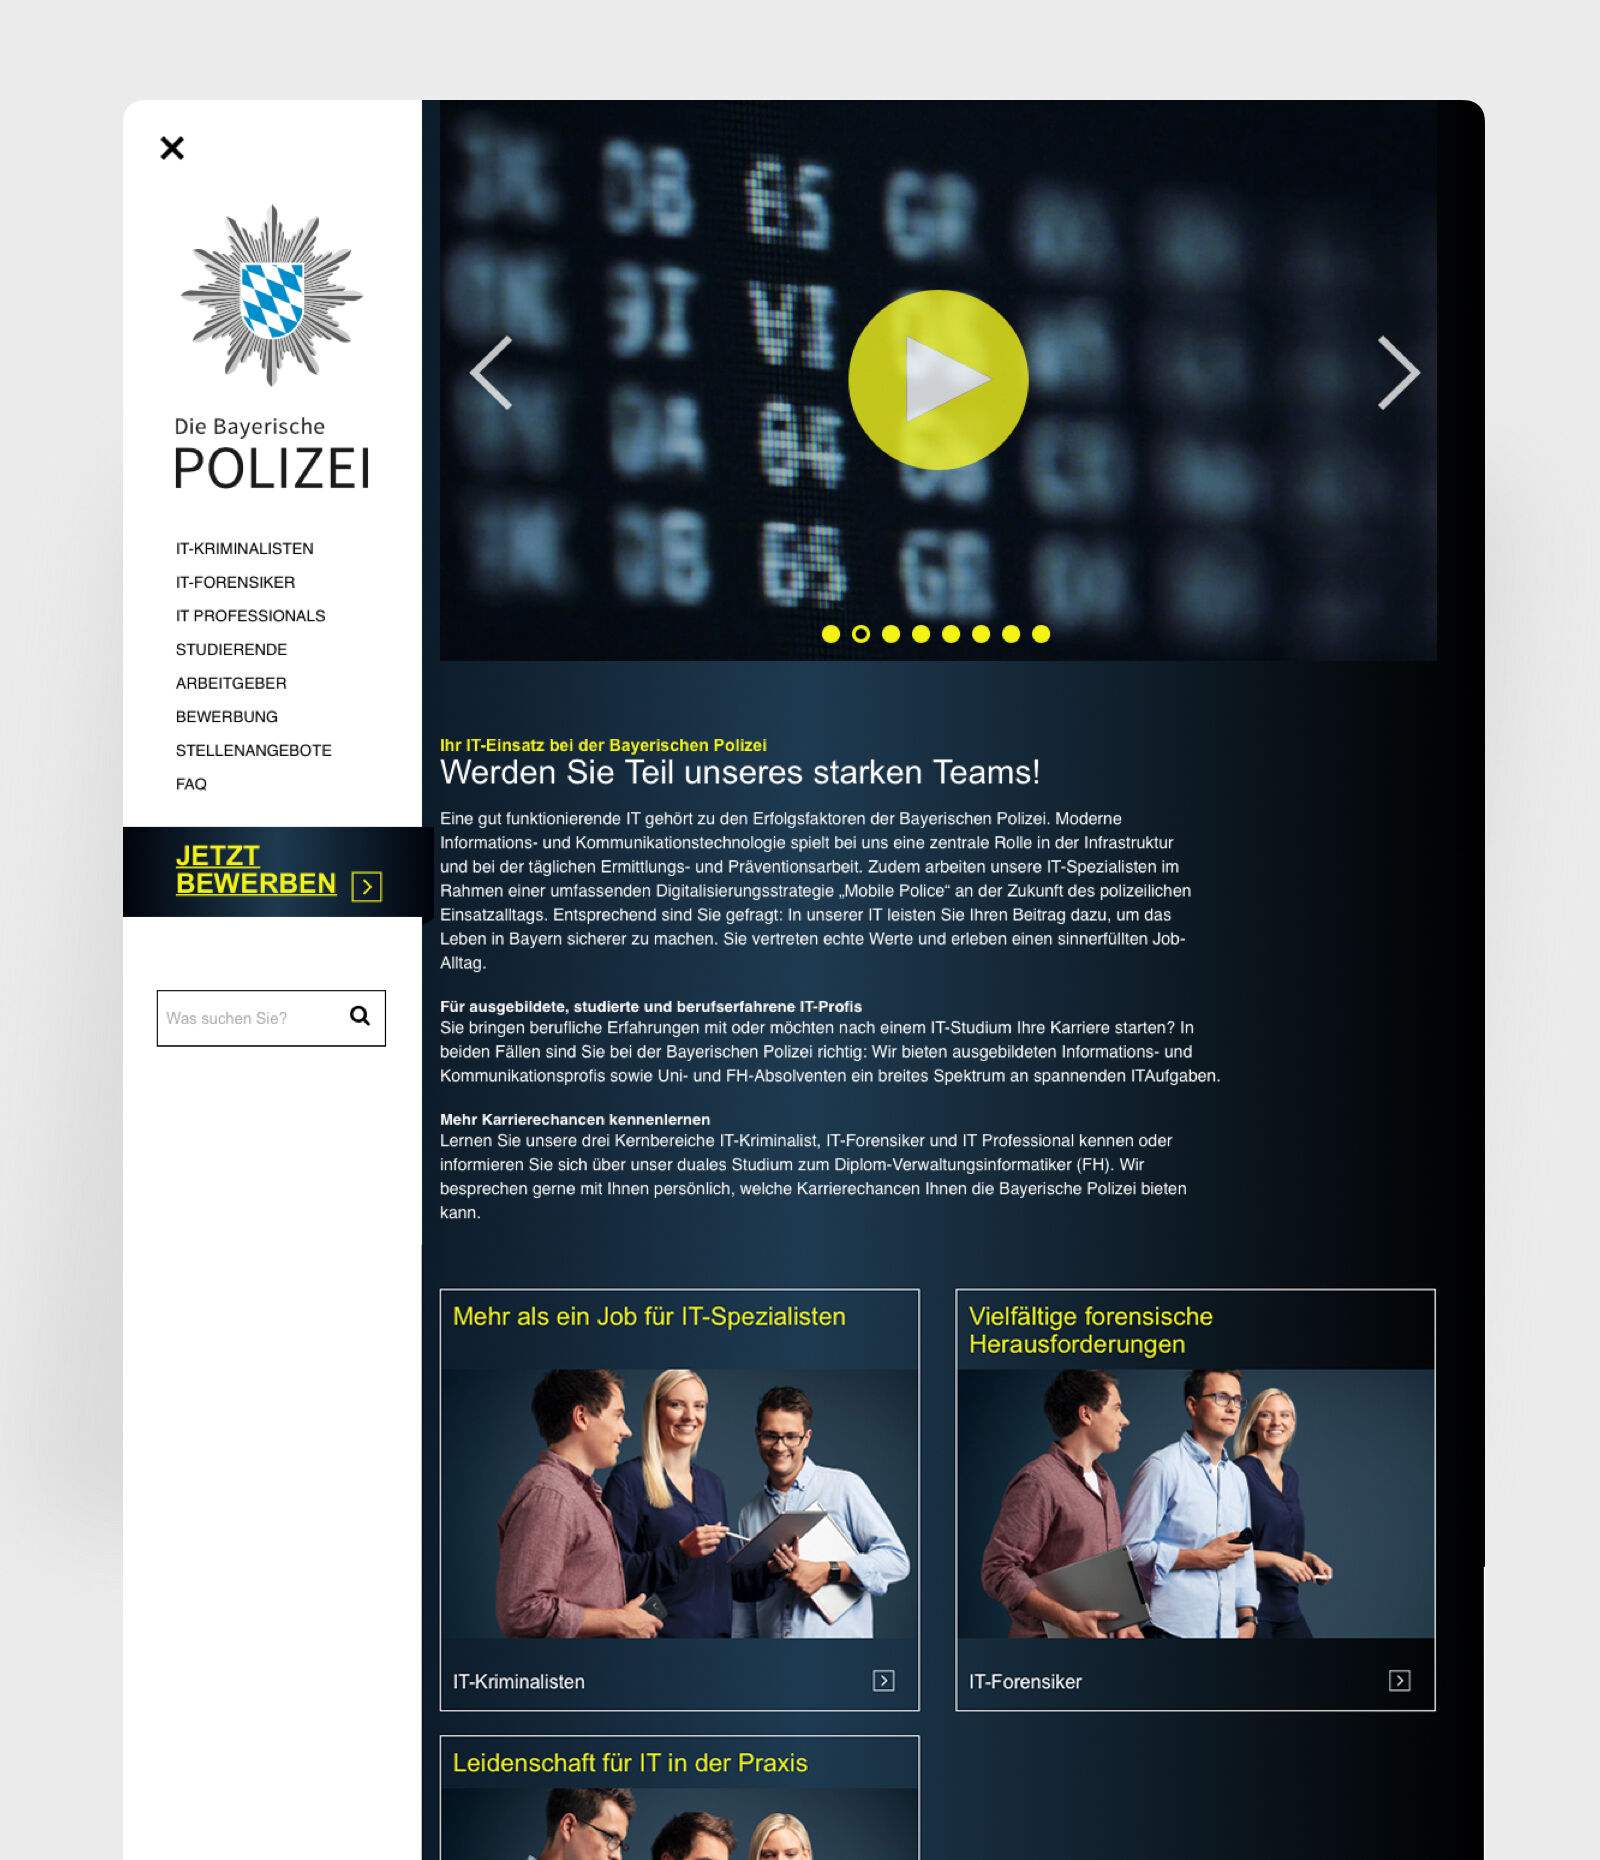 Bayrische Polizei LUK - Webseite Ipad